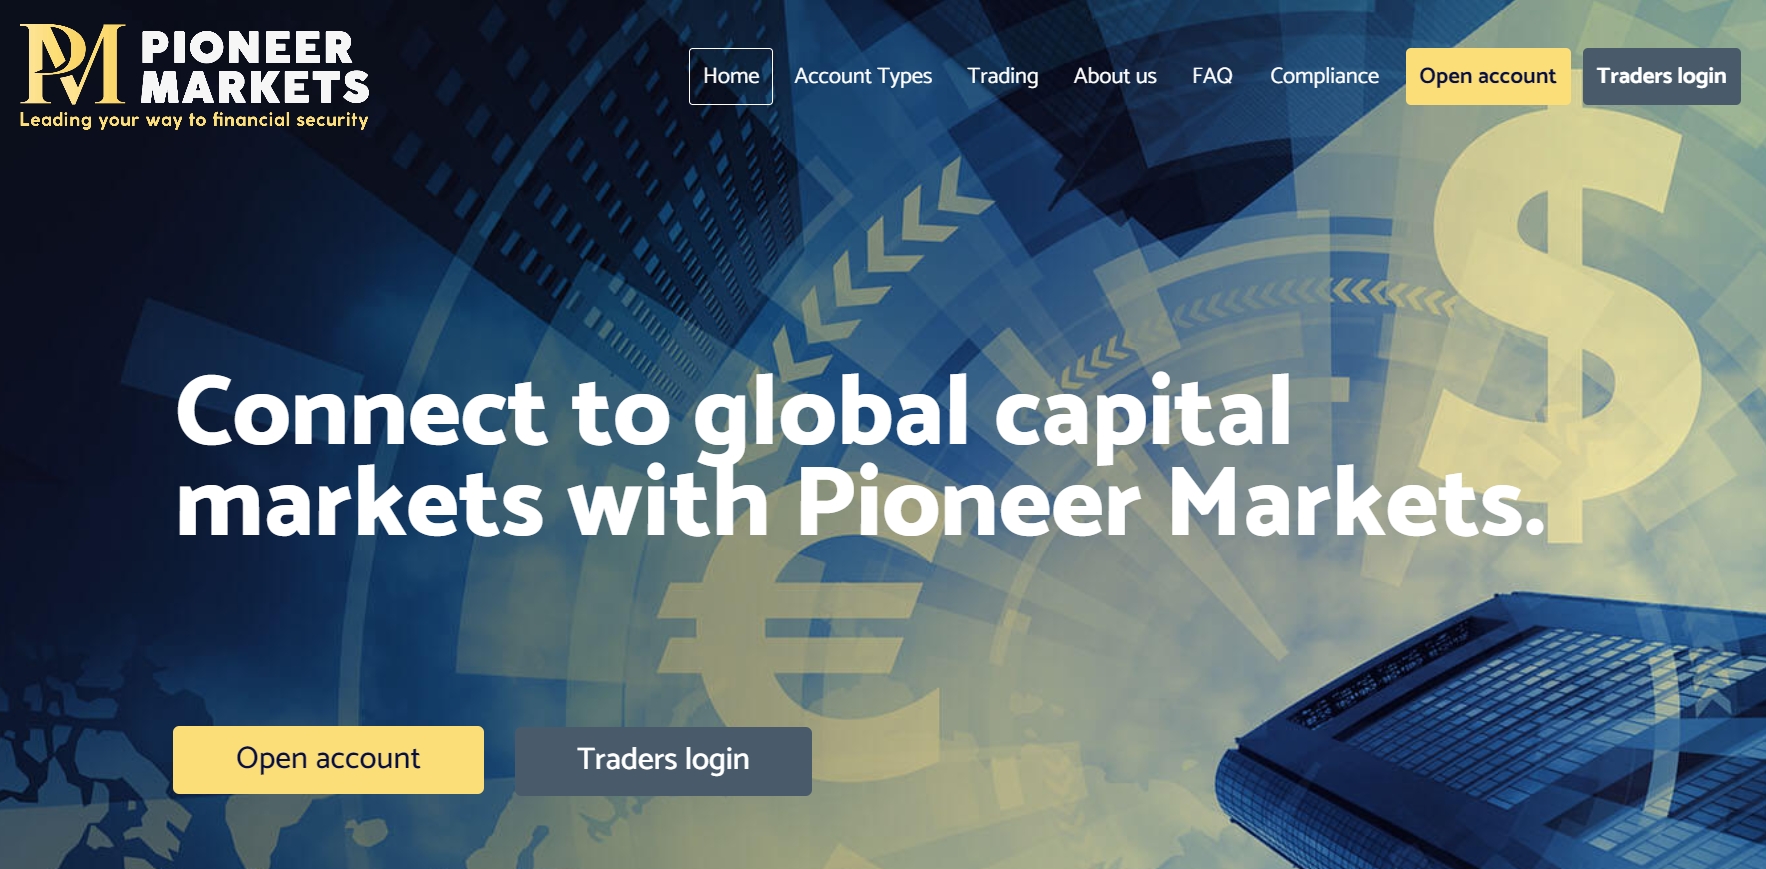 Pioneer Markets homepage